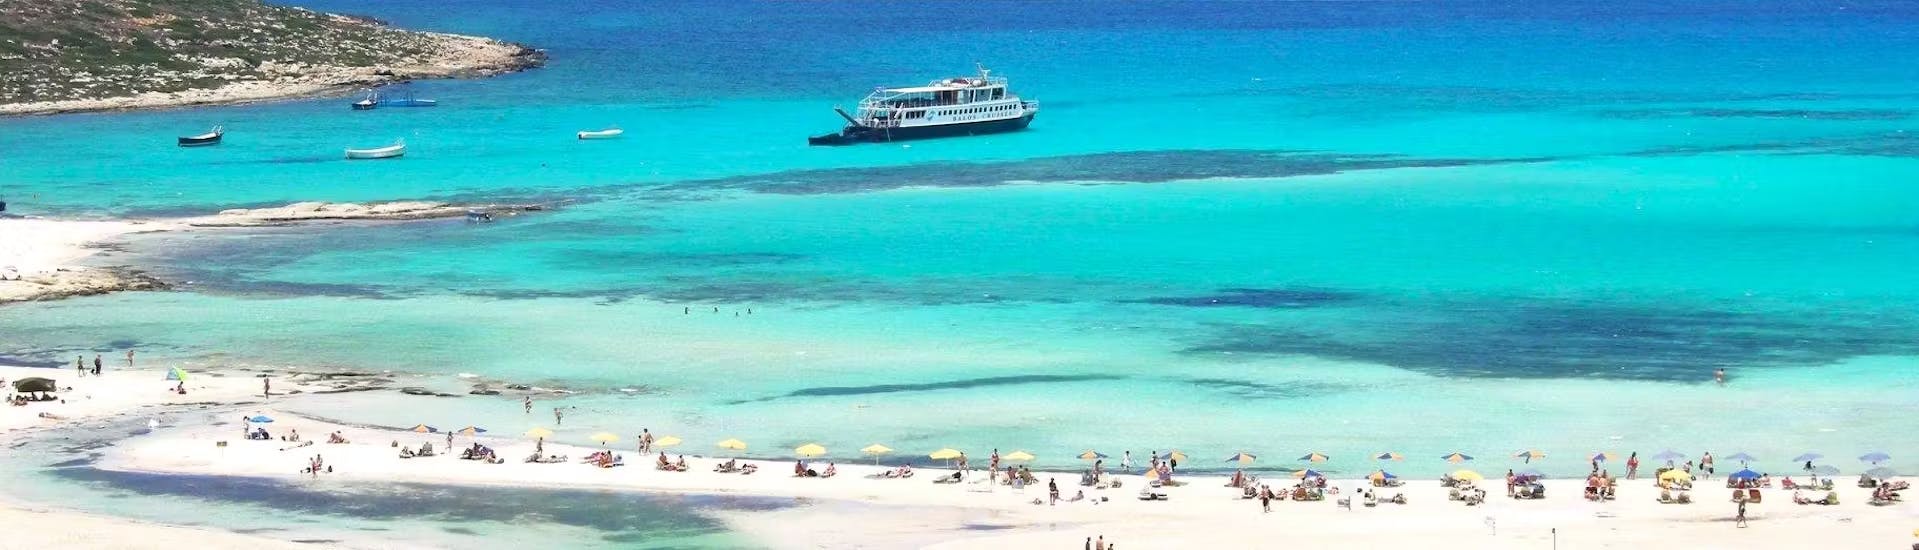 La spiaggia di Balos con le sue acque cristalline durante la Gita in barca a Gramvousa e Balos con transfer dall'area di Chania con Quality Travel Crete.